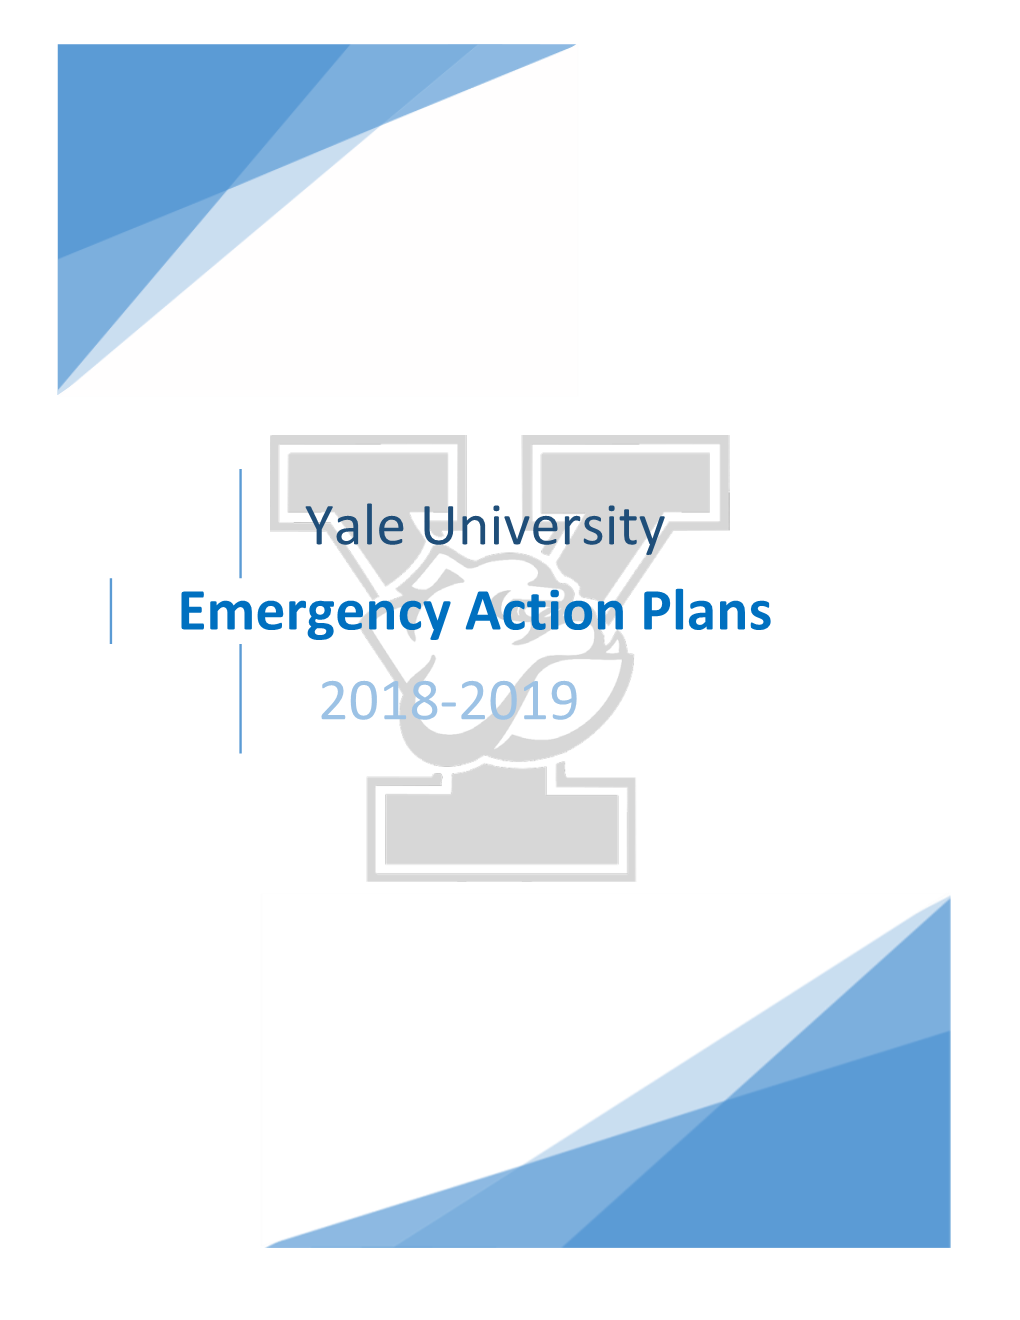 Yale University Emergency Action Plans 2018-2019